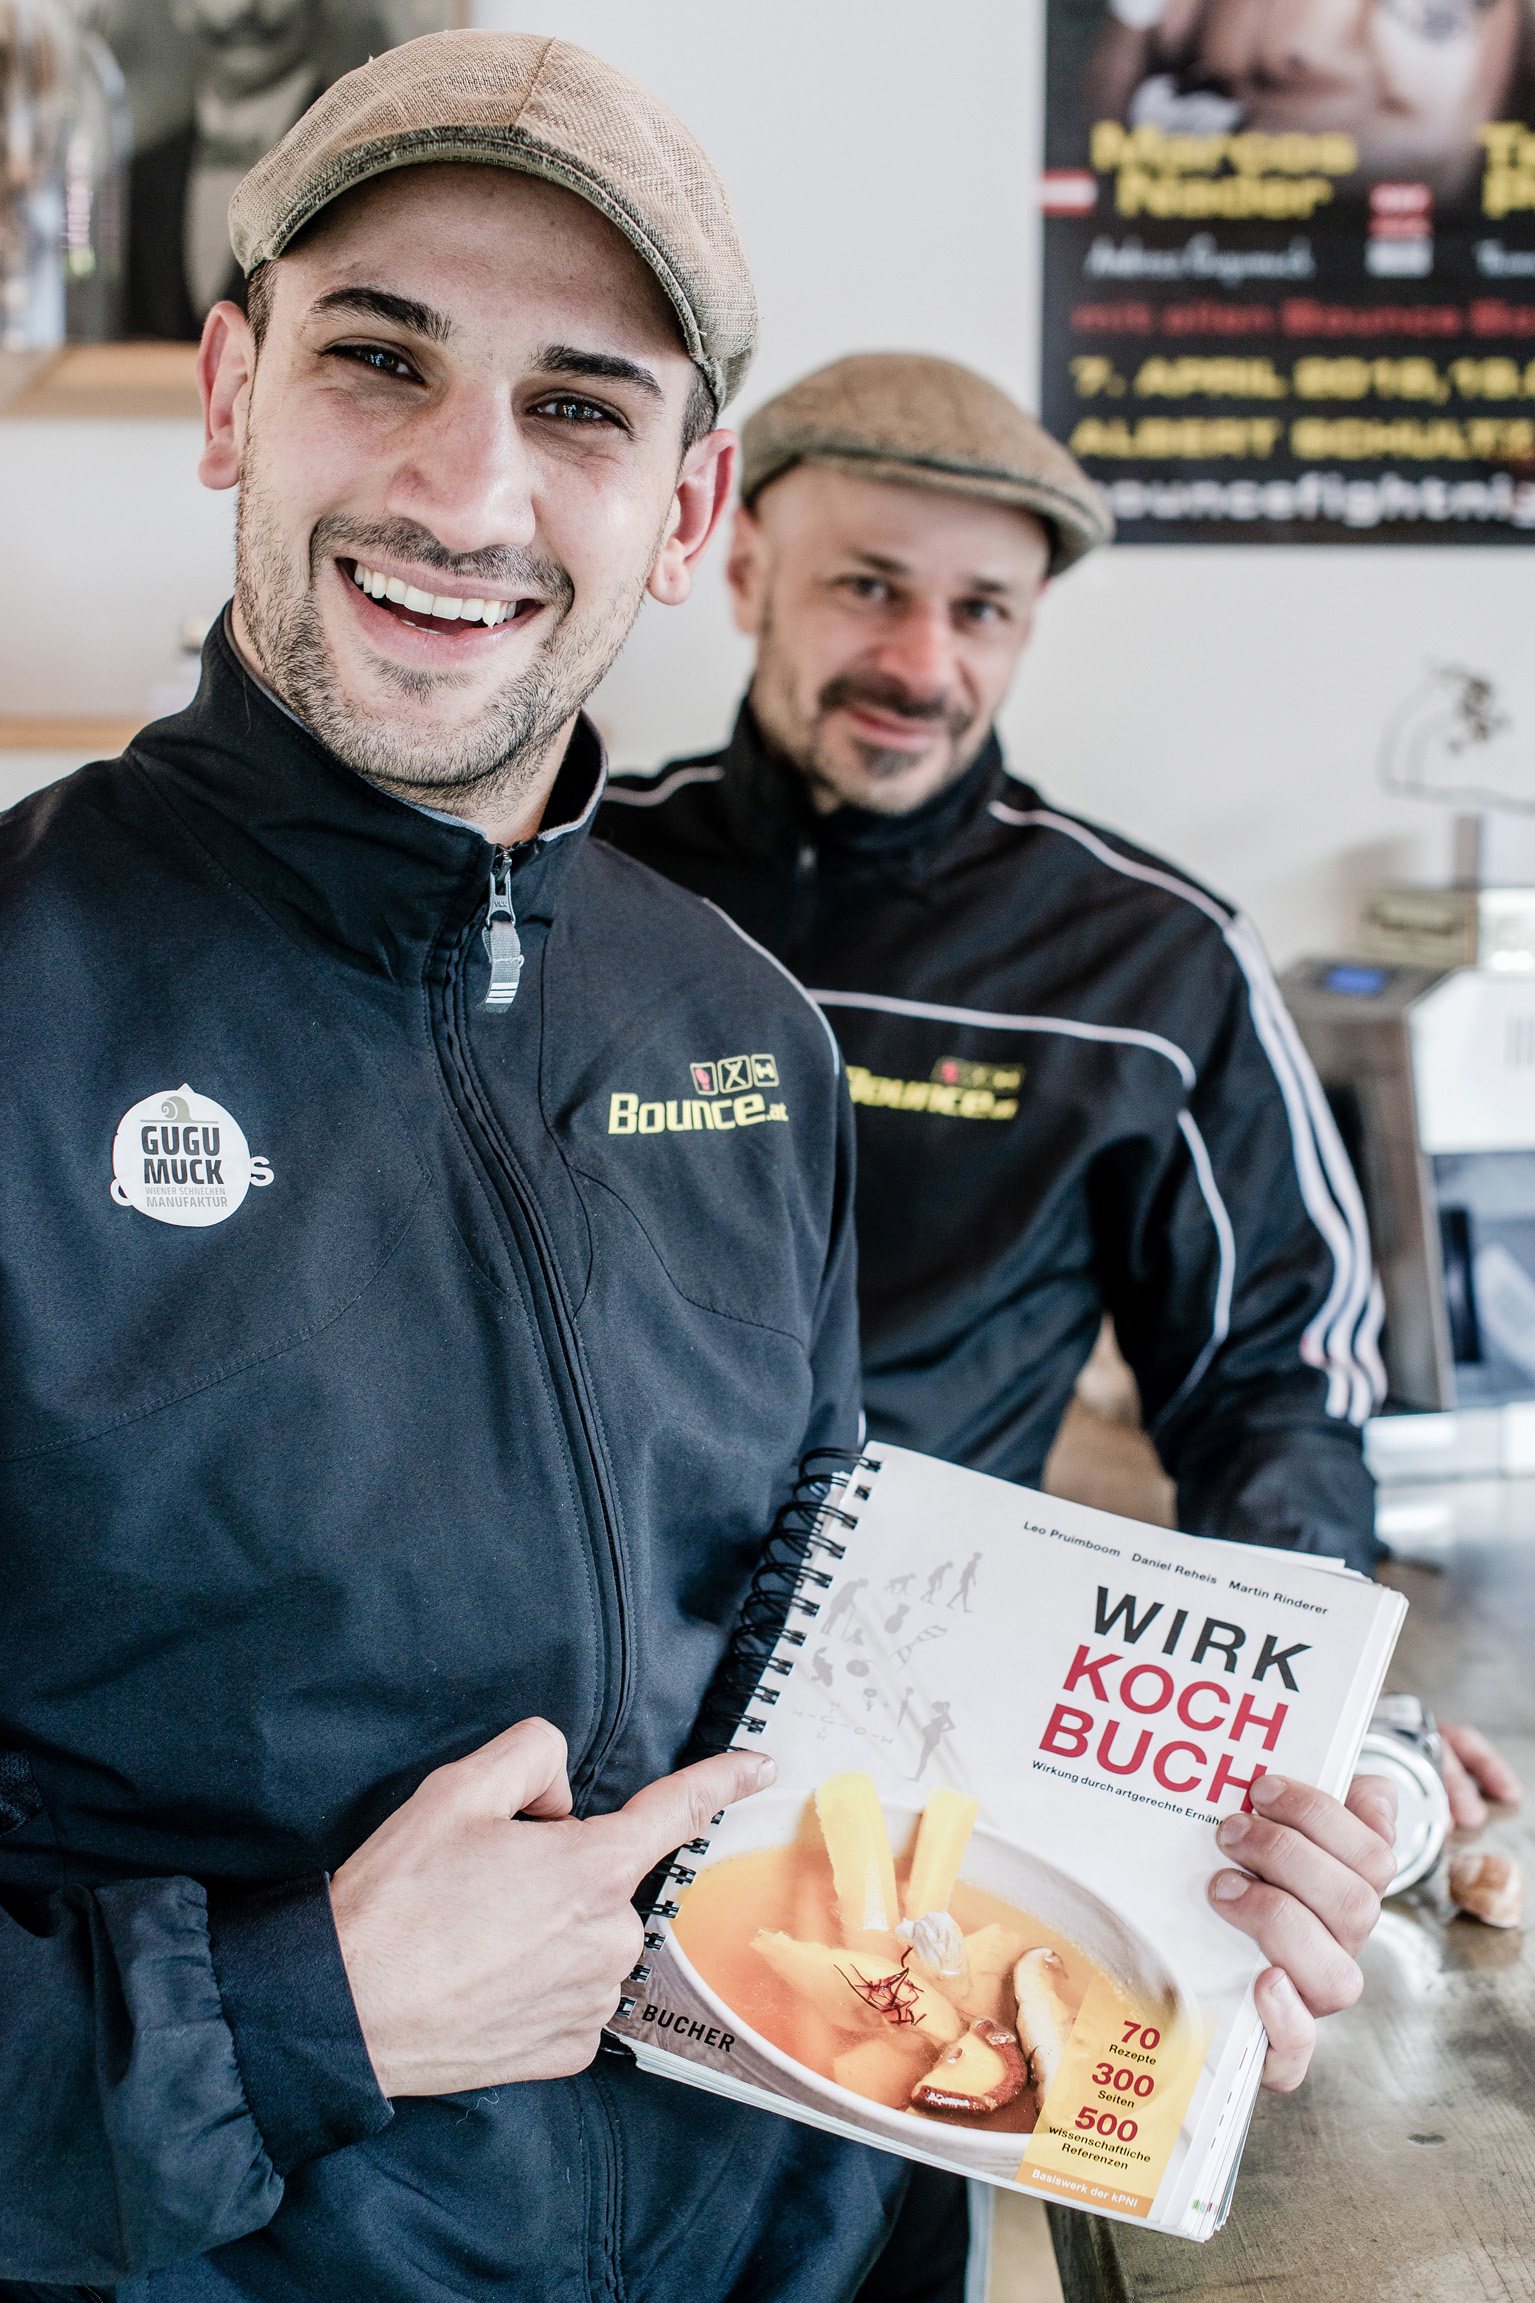 Artgerechte Ernährung mit Boxchampion Marcos Nader und Andreas Gugumuck. In diesem für Sportler sehr relevanten Wirk-Koch-Buch. Zu Ernährung mit den französischen Delikatessen sind die Schnecken eine schmackhafte Proteinquelle.